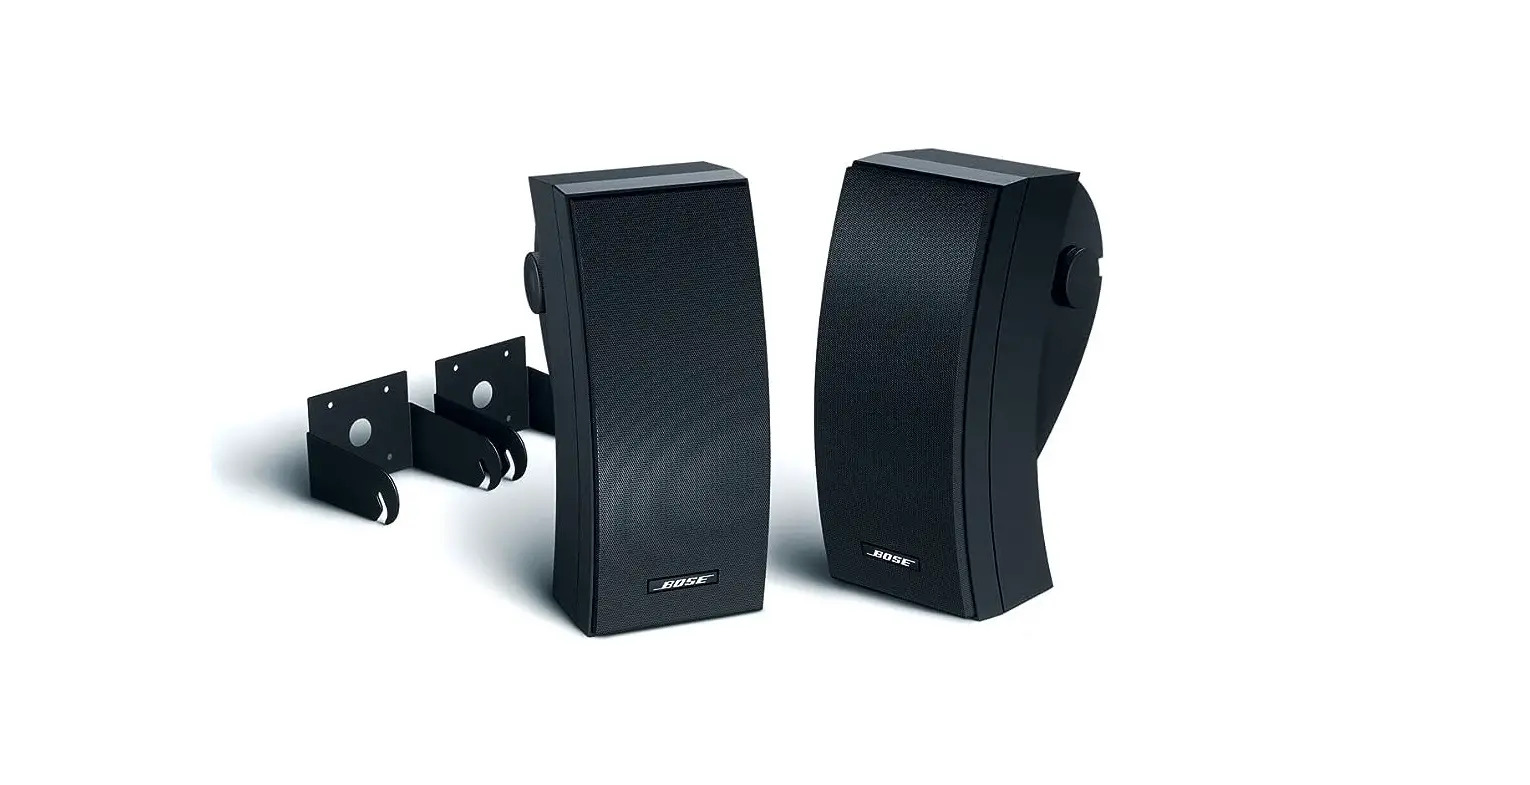 251® environmental speakers